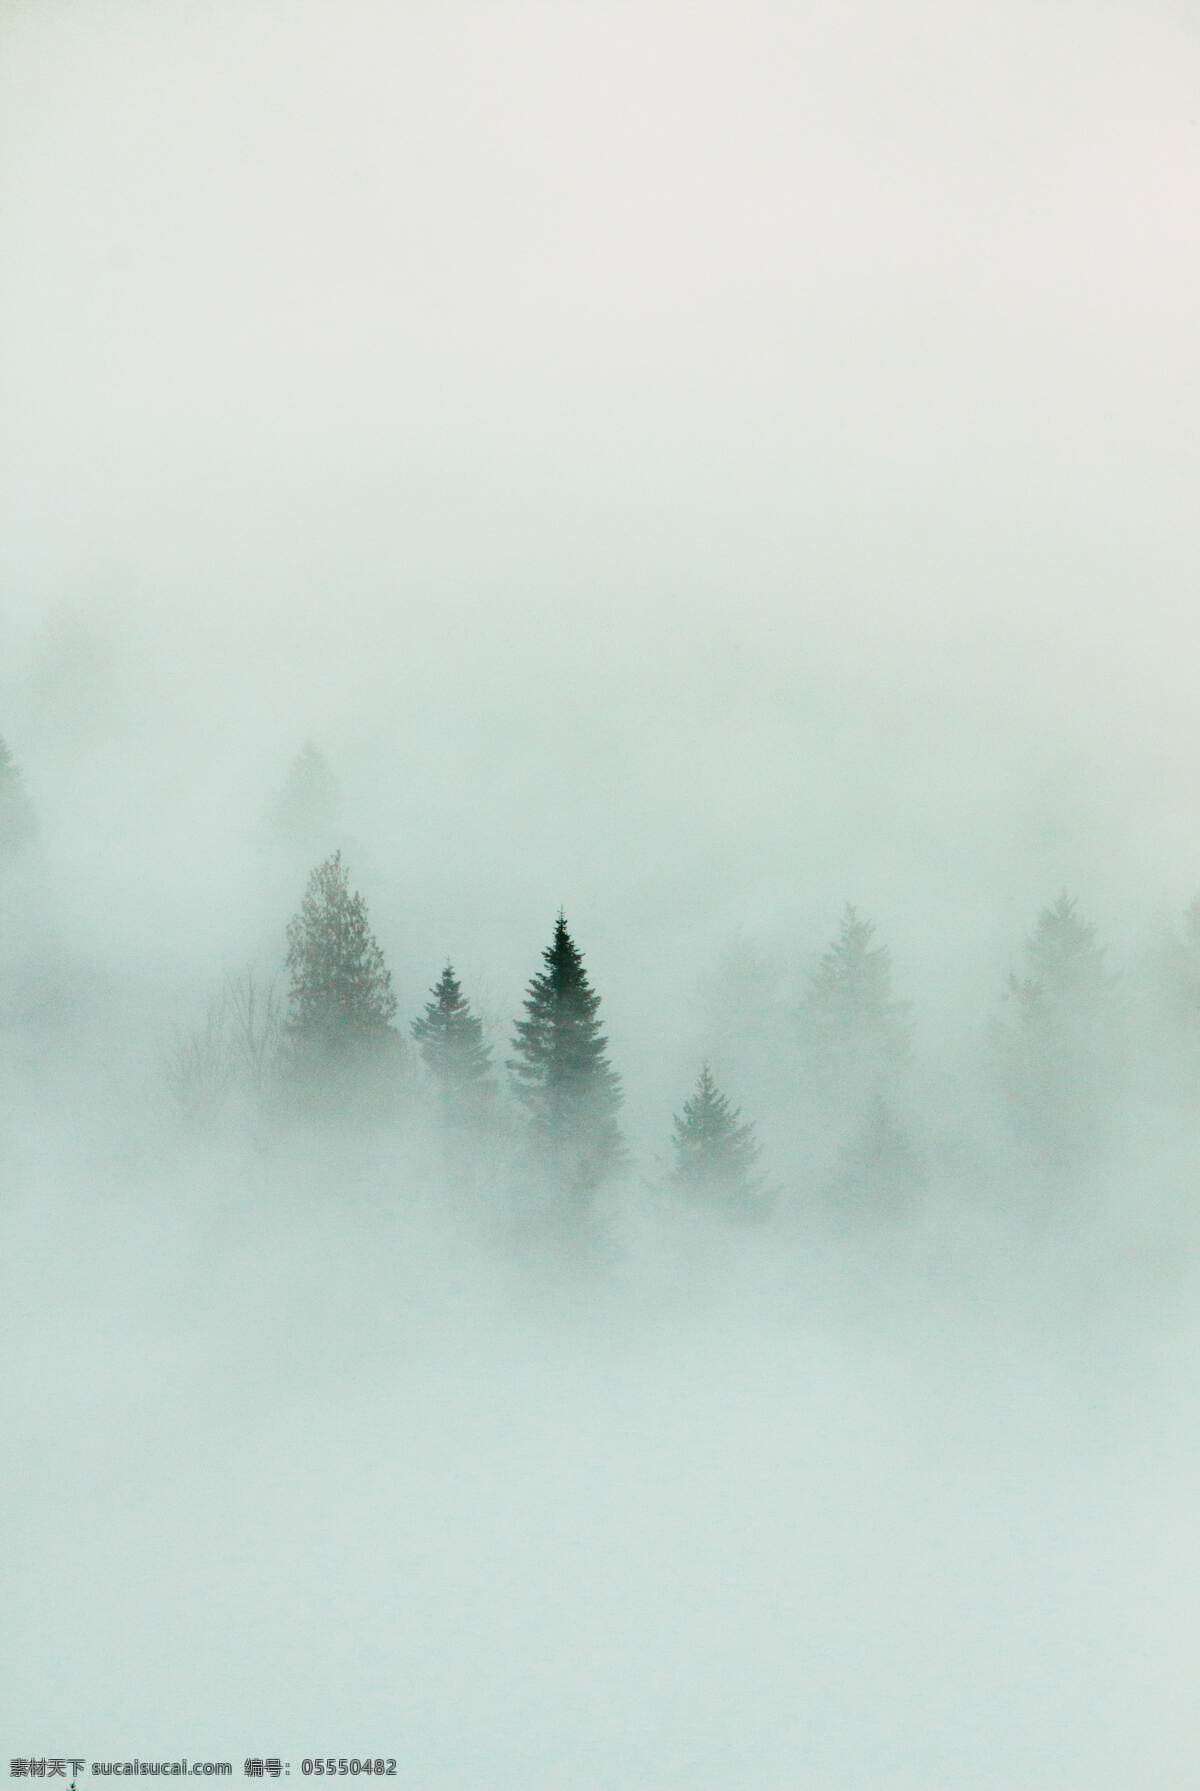 森林中的云雾 云雾 起雾 雾气 大雾 雾水 森林 大树 树木 朦胧 照片 自然景观 自然风景